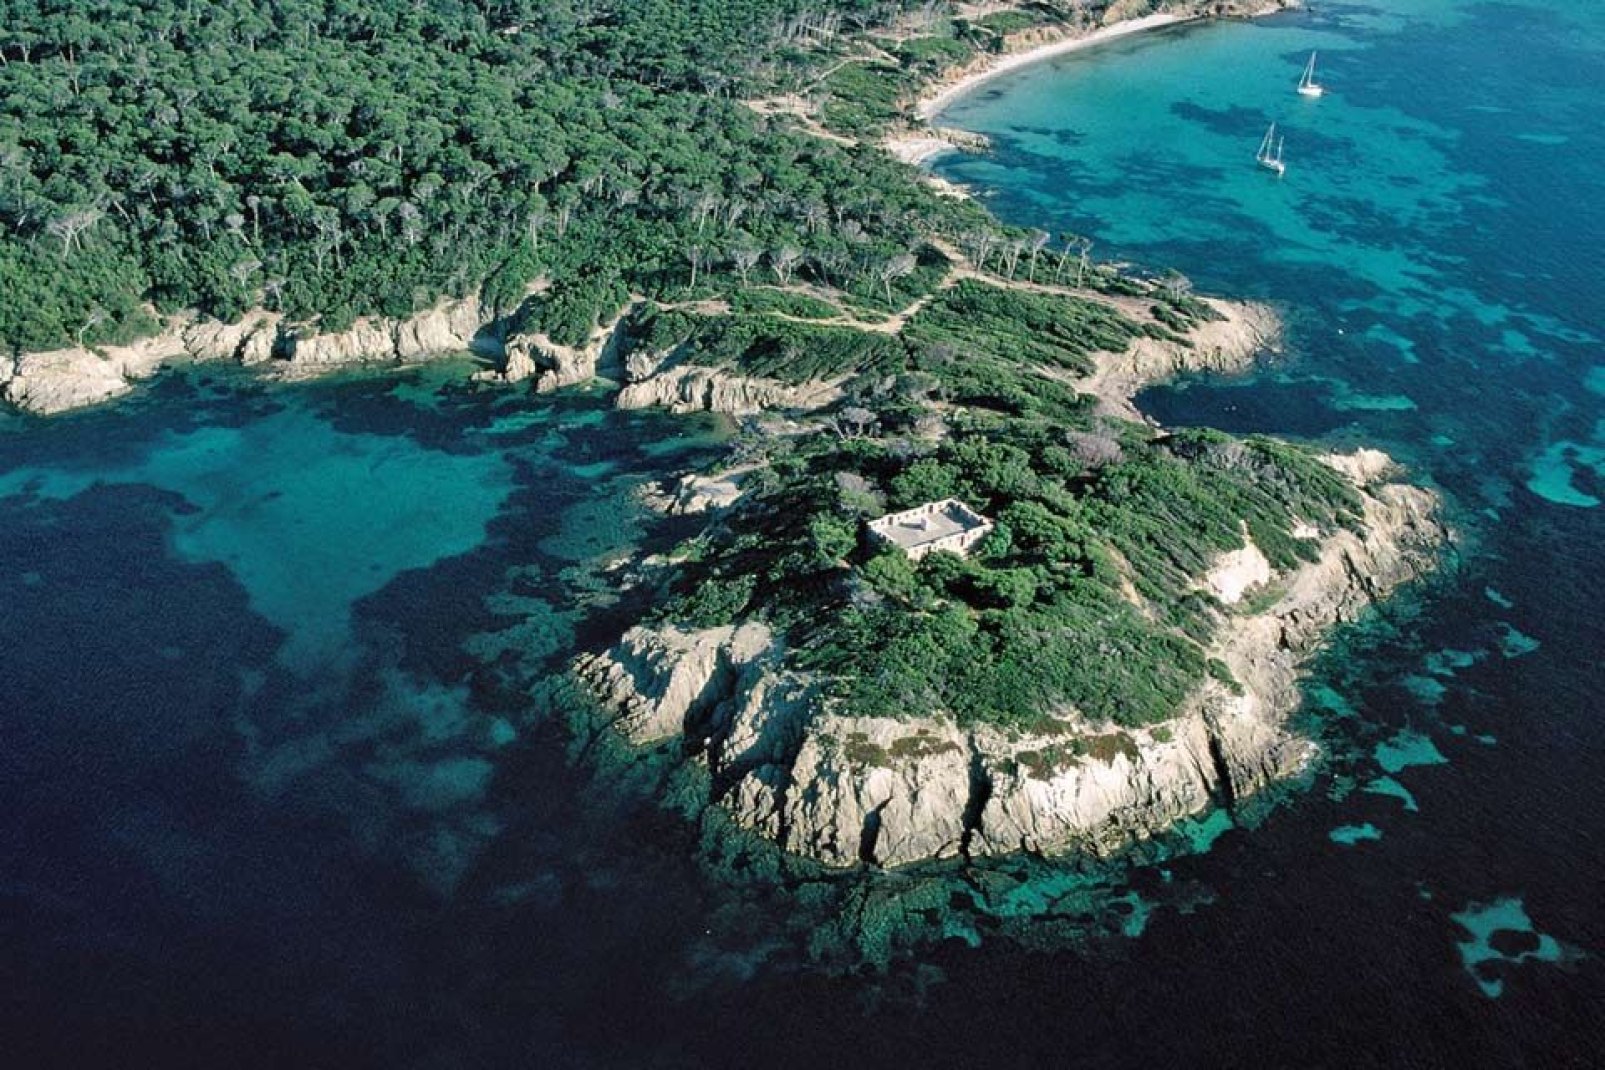 C'est l'île la plus grande des îles de Hyères. Véritable havre de paix, l'île représente un lieu paradisiaque chargé d'histoire.